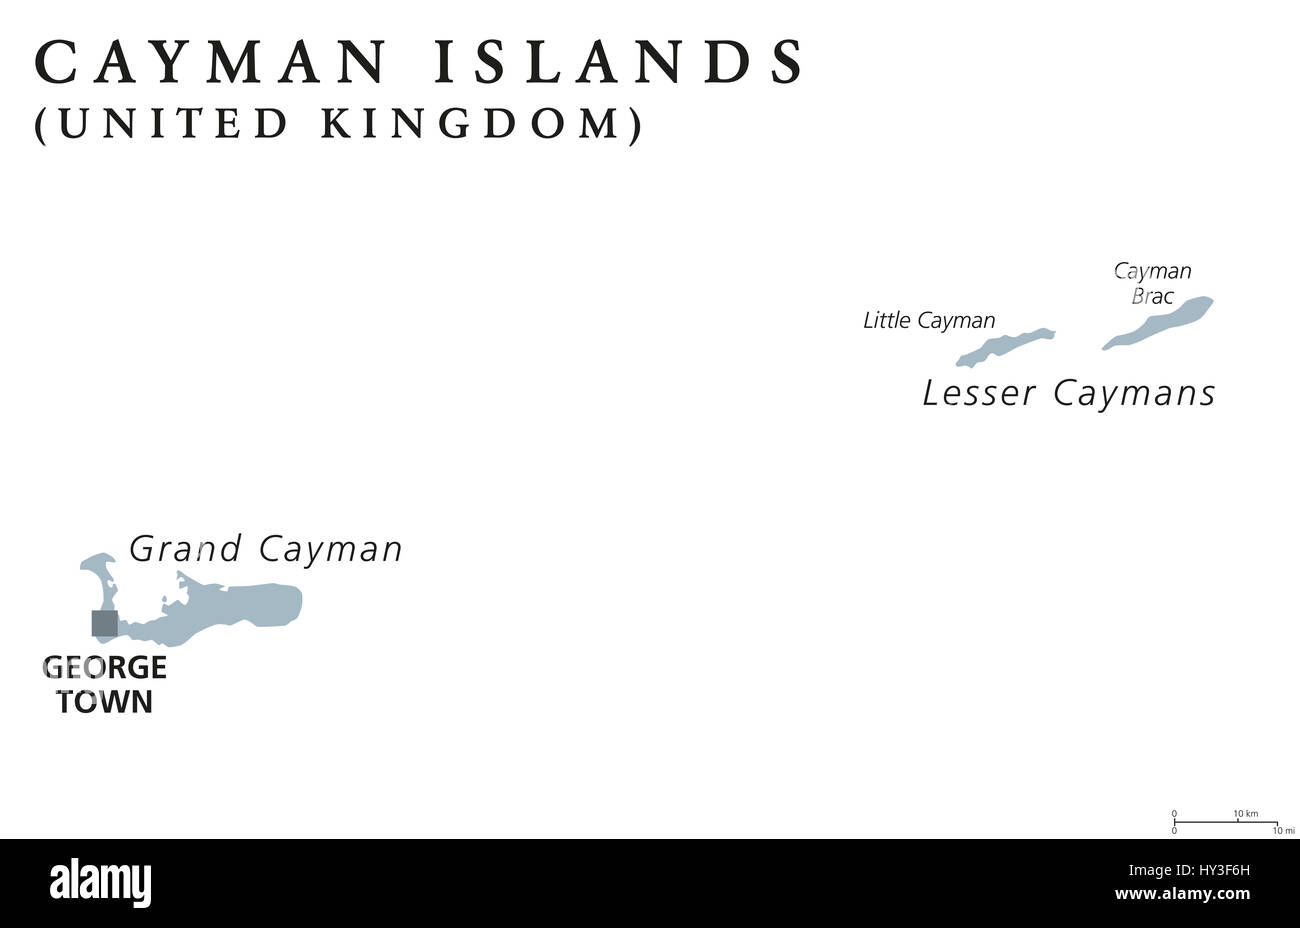 Îles Caïmanes carte politique de la peine de George Town. Territoire britannique d'outre-mer. Les trois îles situées dans la mer des Caraïbes de l'ouest. Gris illustration. Banque D'Images